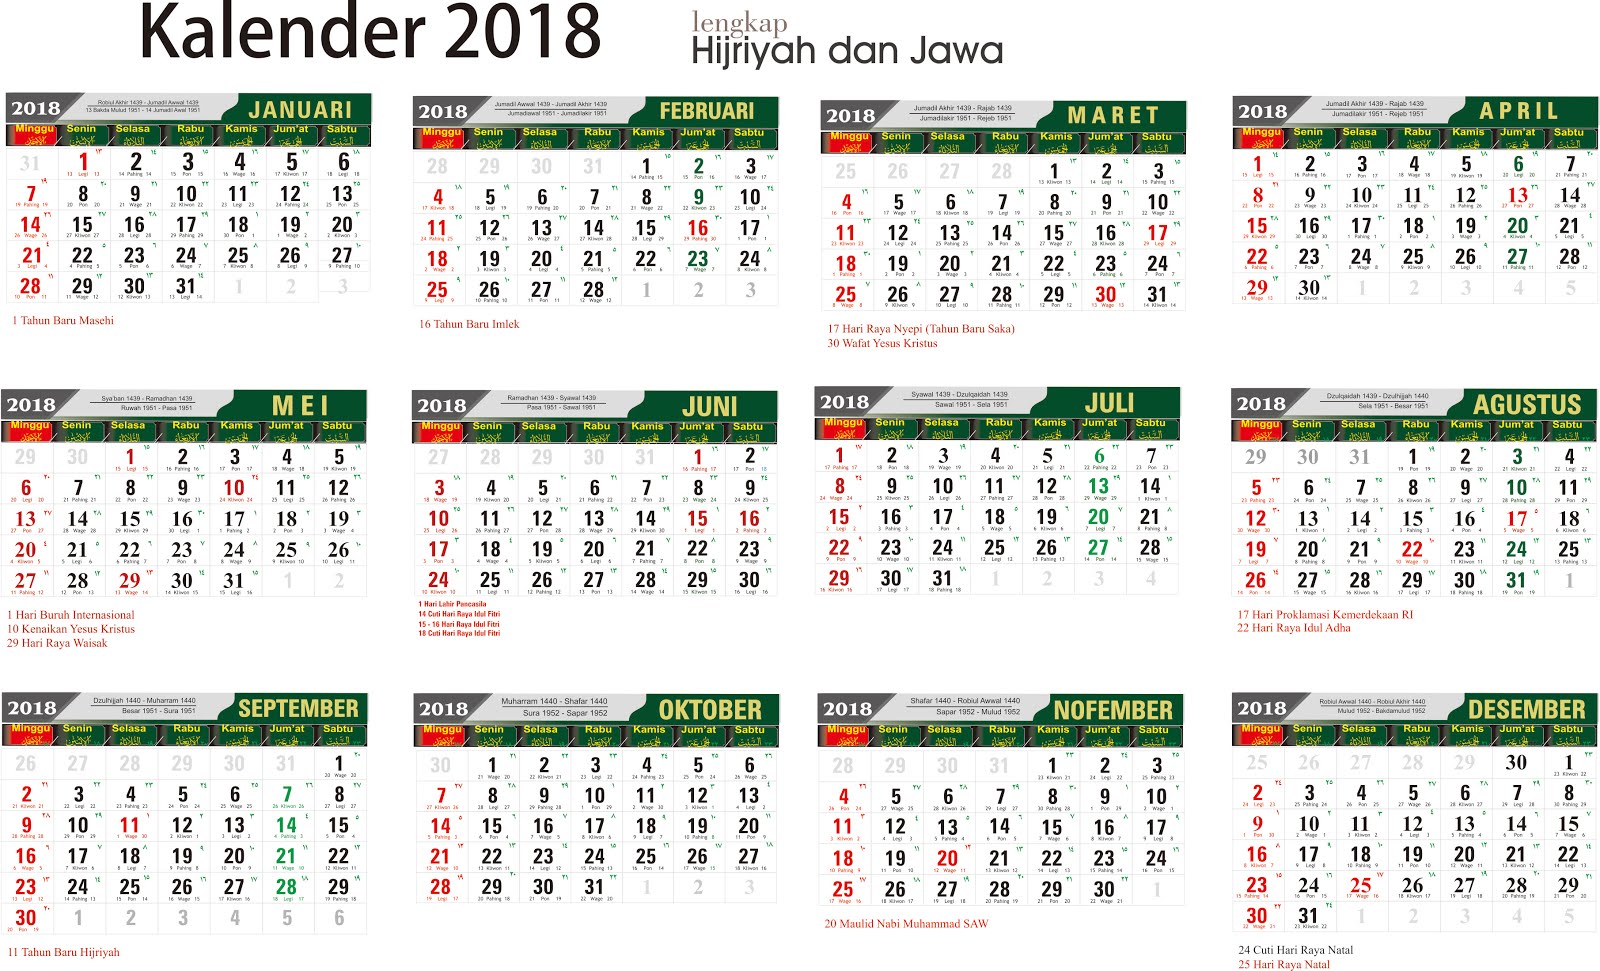 Download Kalender 2018 Lengkap jawa arab - SMAN 1 TUMIJAJAR